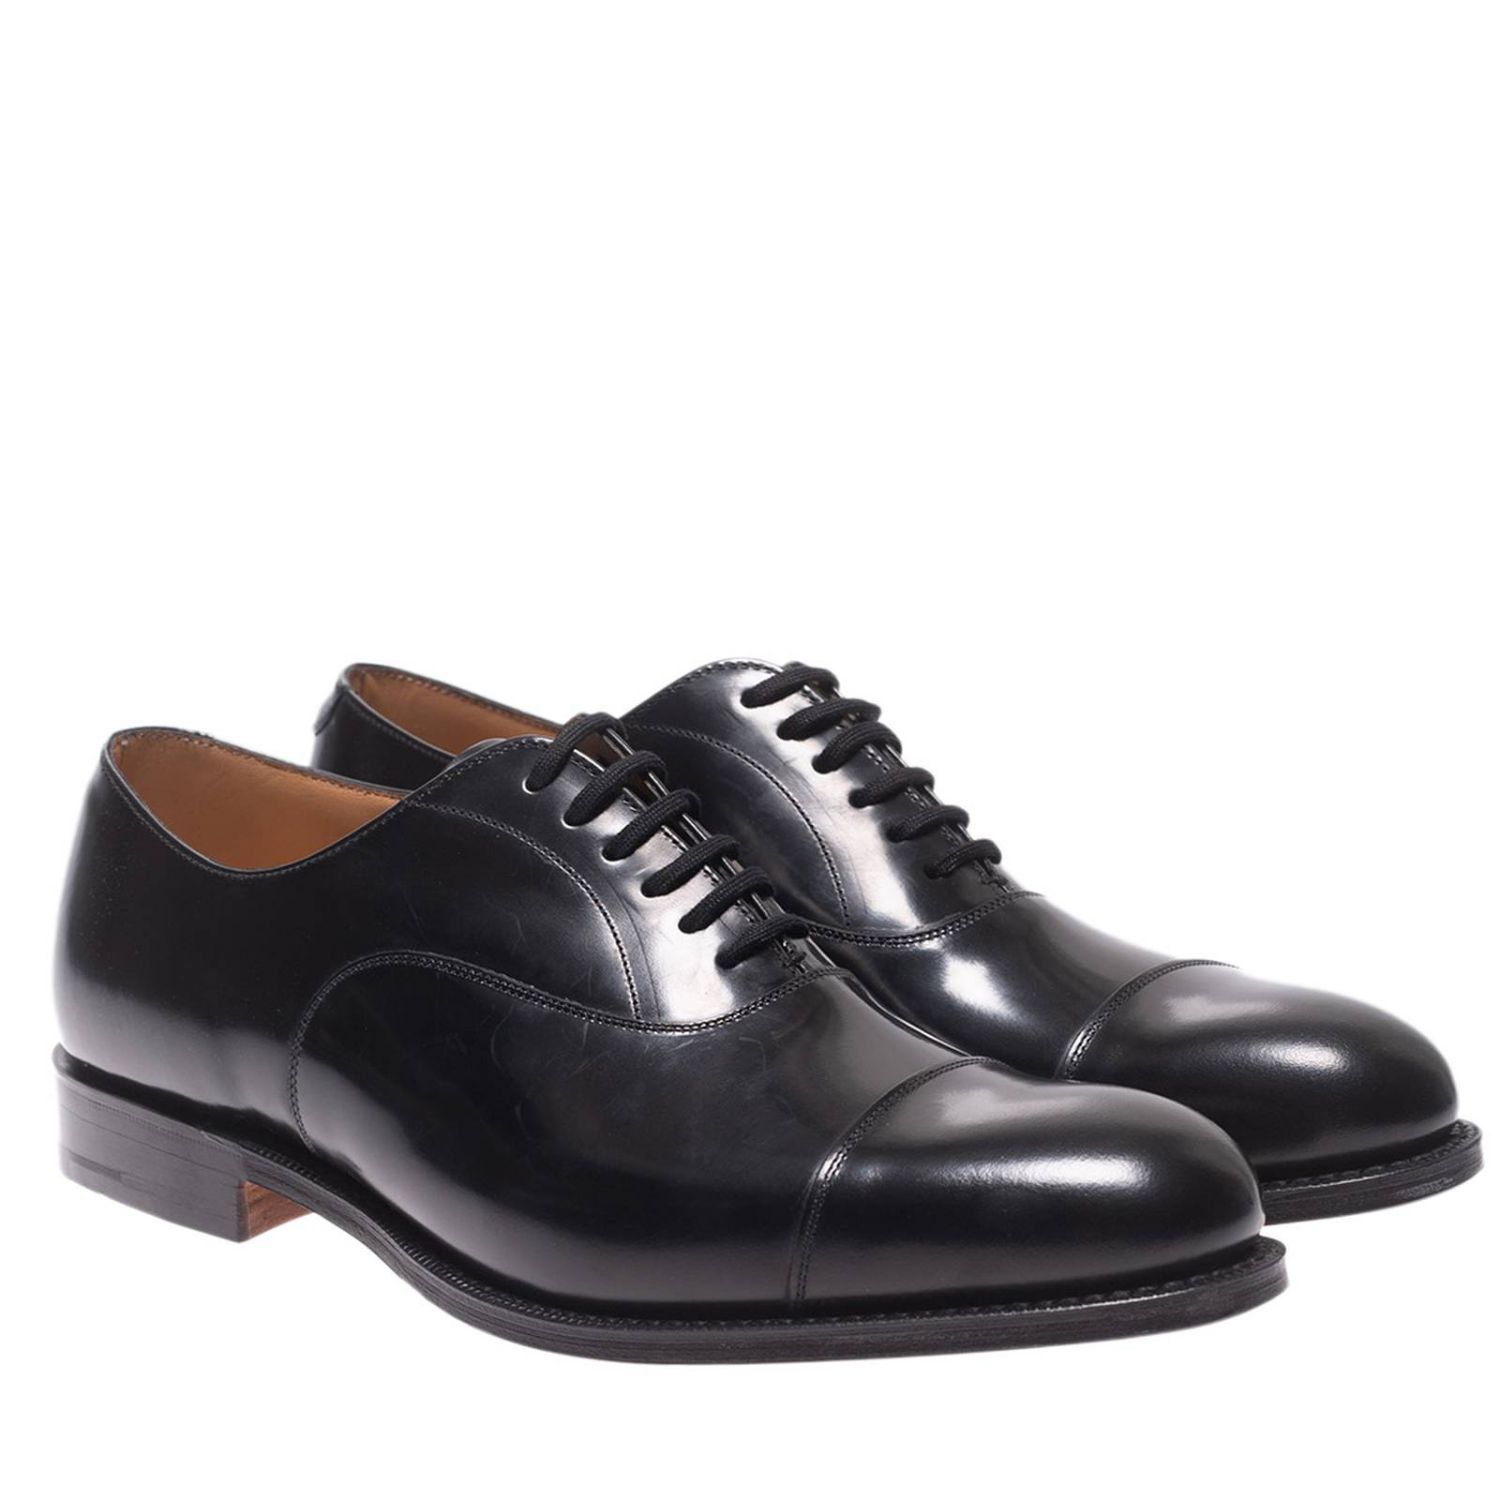 Shoes men Church's | Brogue Shoes Church's Men Black | Brogue Shoes ...